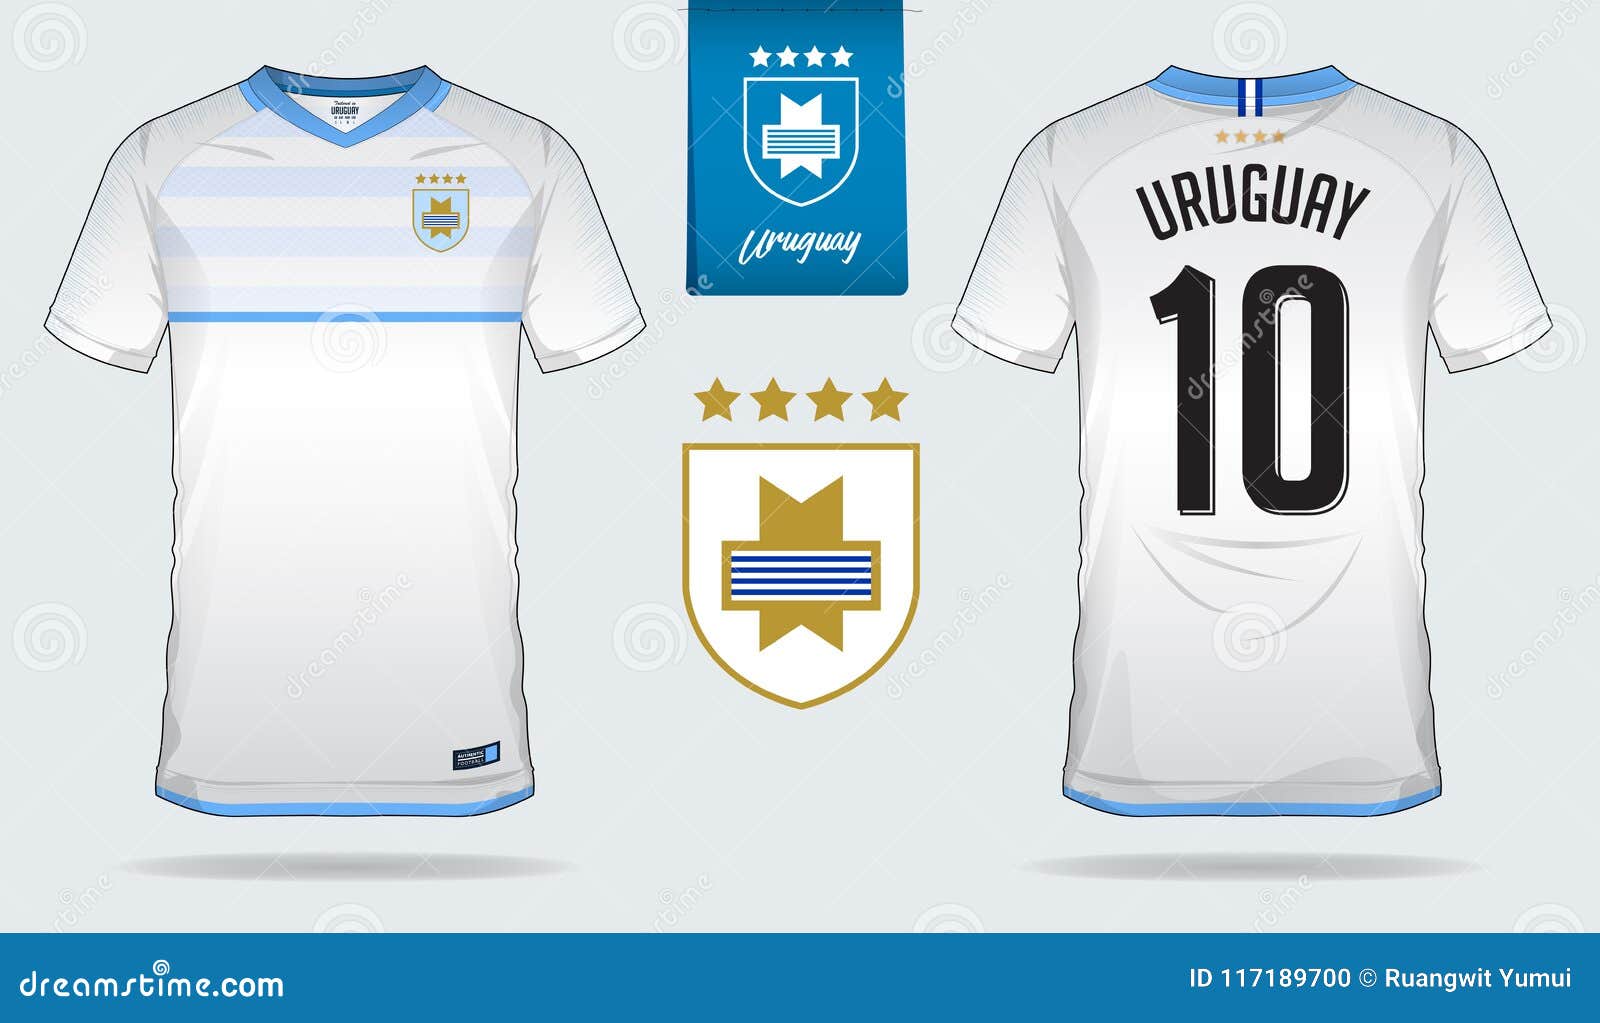  Camiseta del equipo nacional de fútbol de Uruguay a